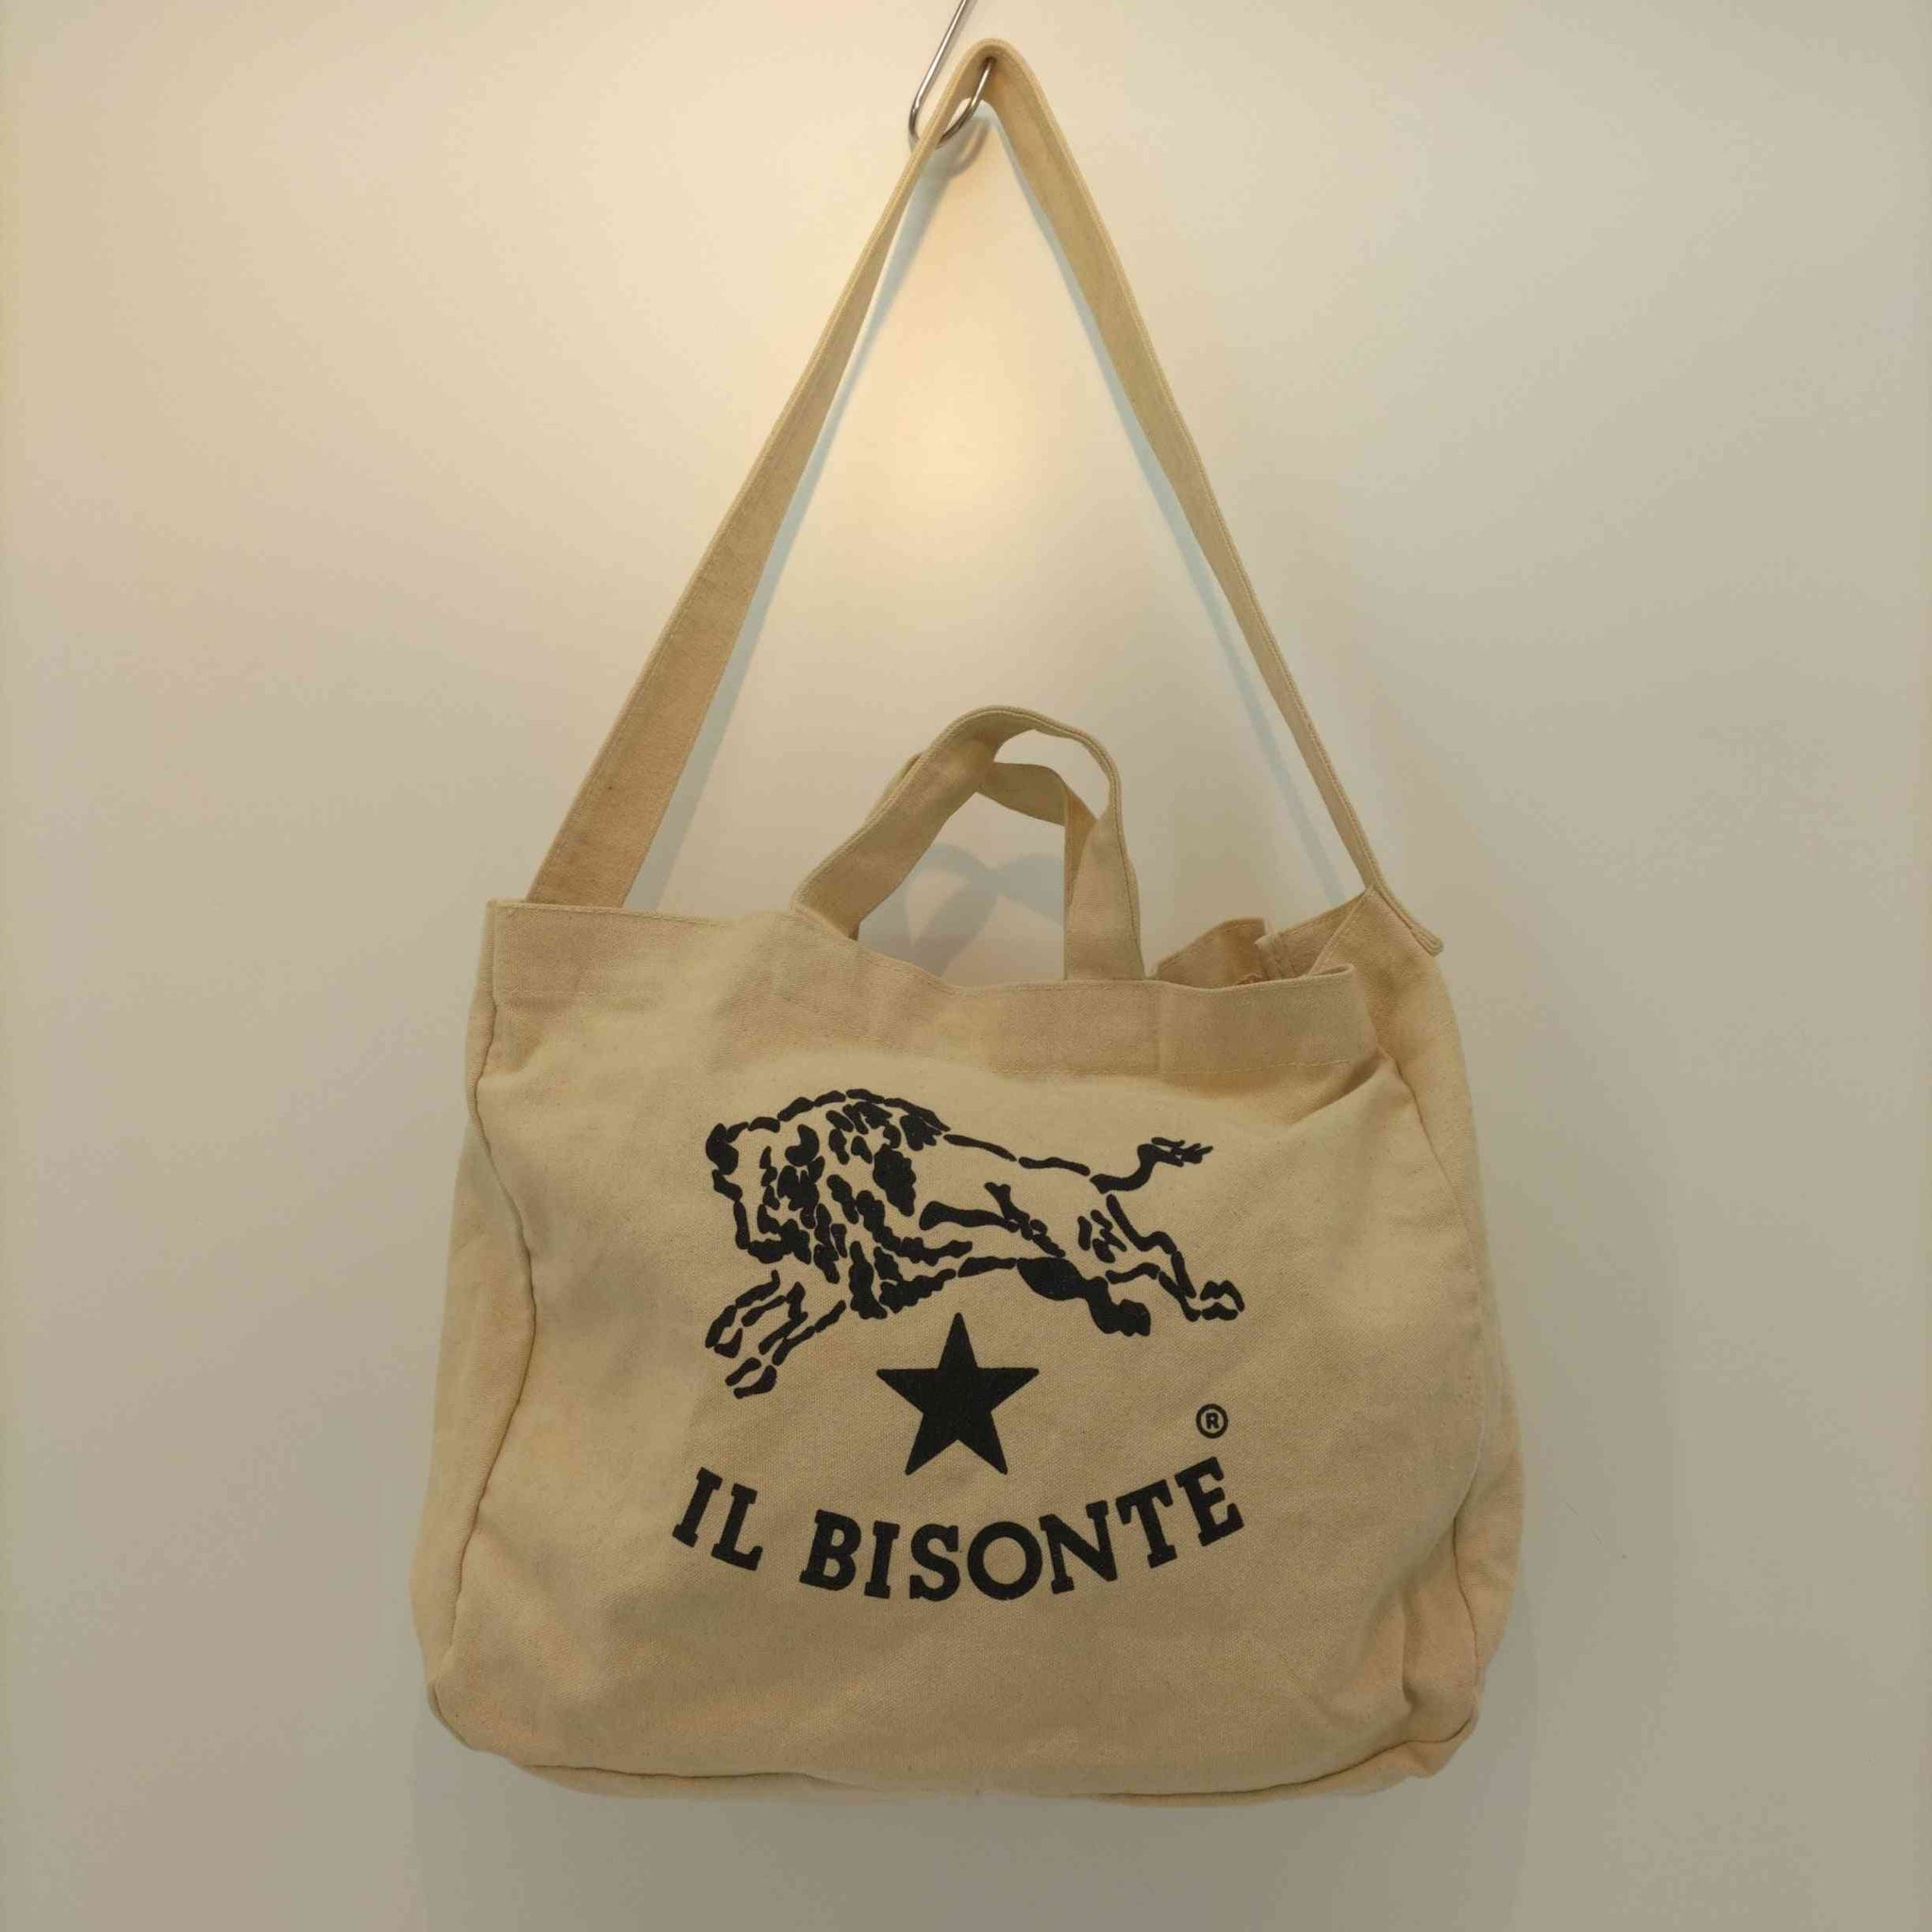 IL BISONTE(イルビゾンテ)2way キャンバスショルダーバッグ トート